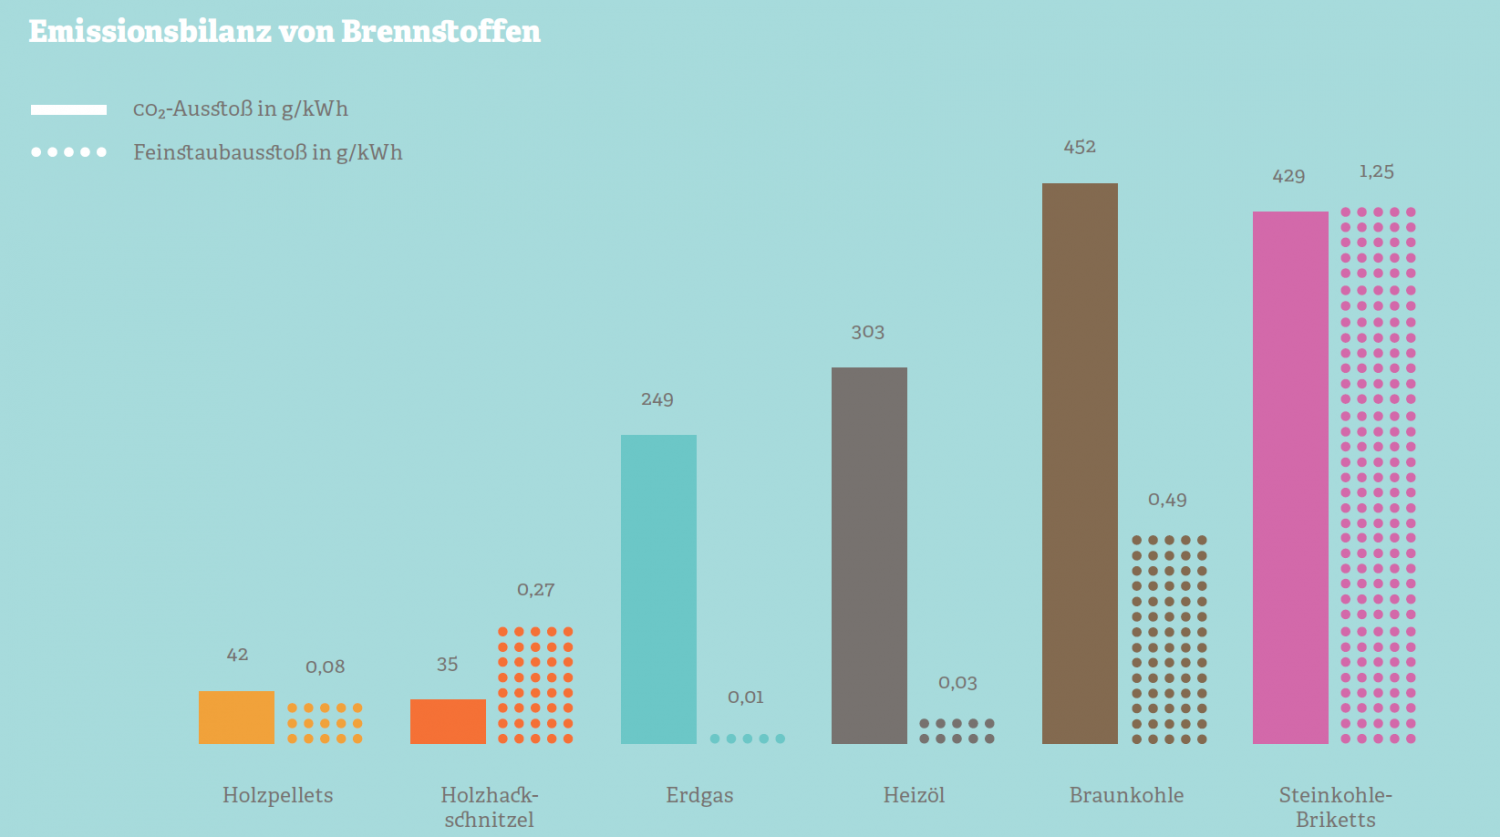 Grafik zur Emissionsbilanz von Brennstoffen. Quelle: Institut Wohnen und Umwelt, Bundesverband der deutschen Gas- und Wasserwirtschaft, 2014